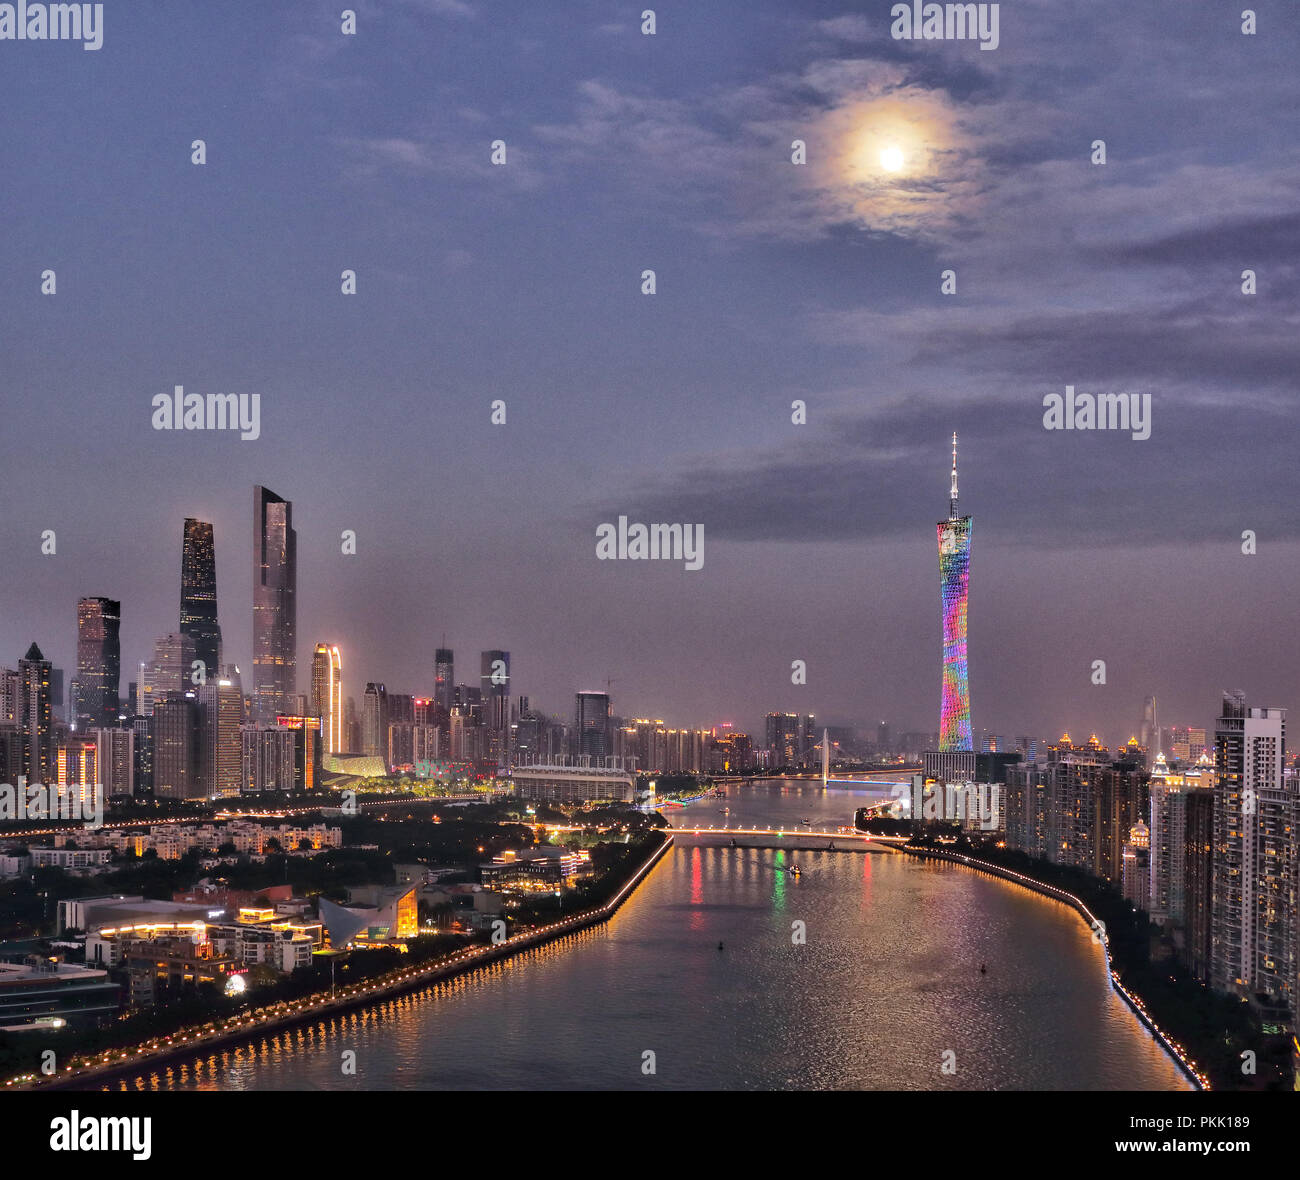 La ville de Guangzhou, Guangdong Province building at night Banque D'Images